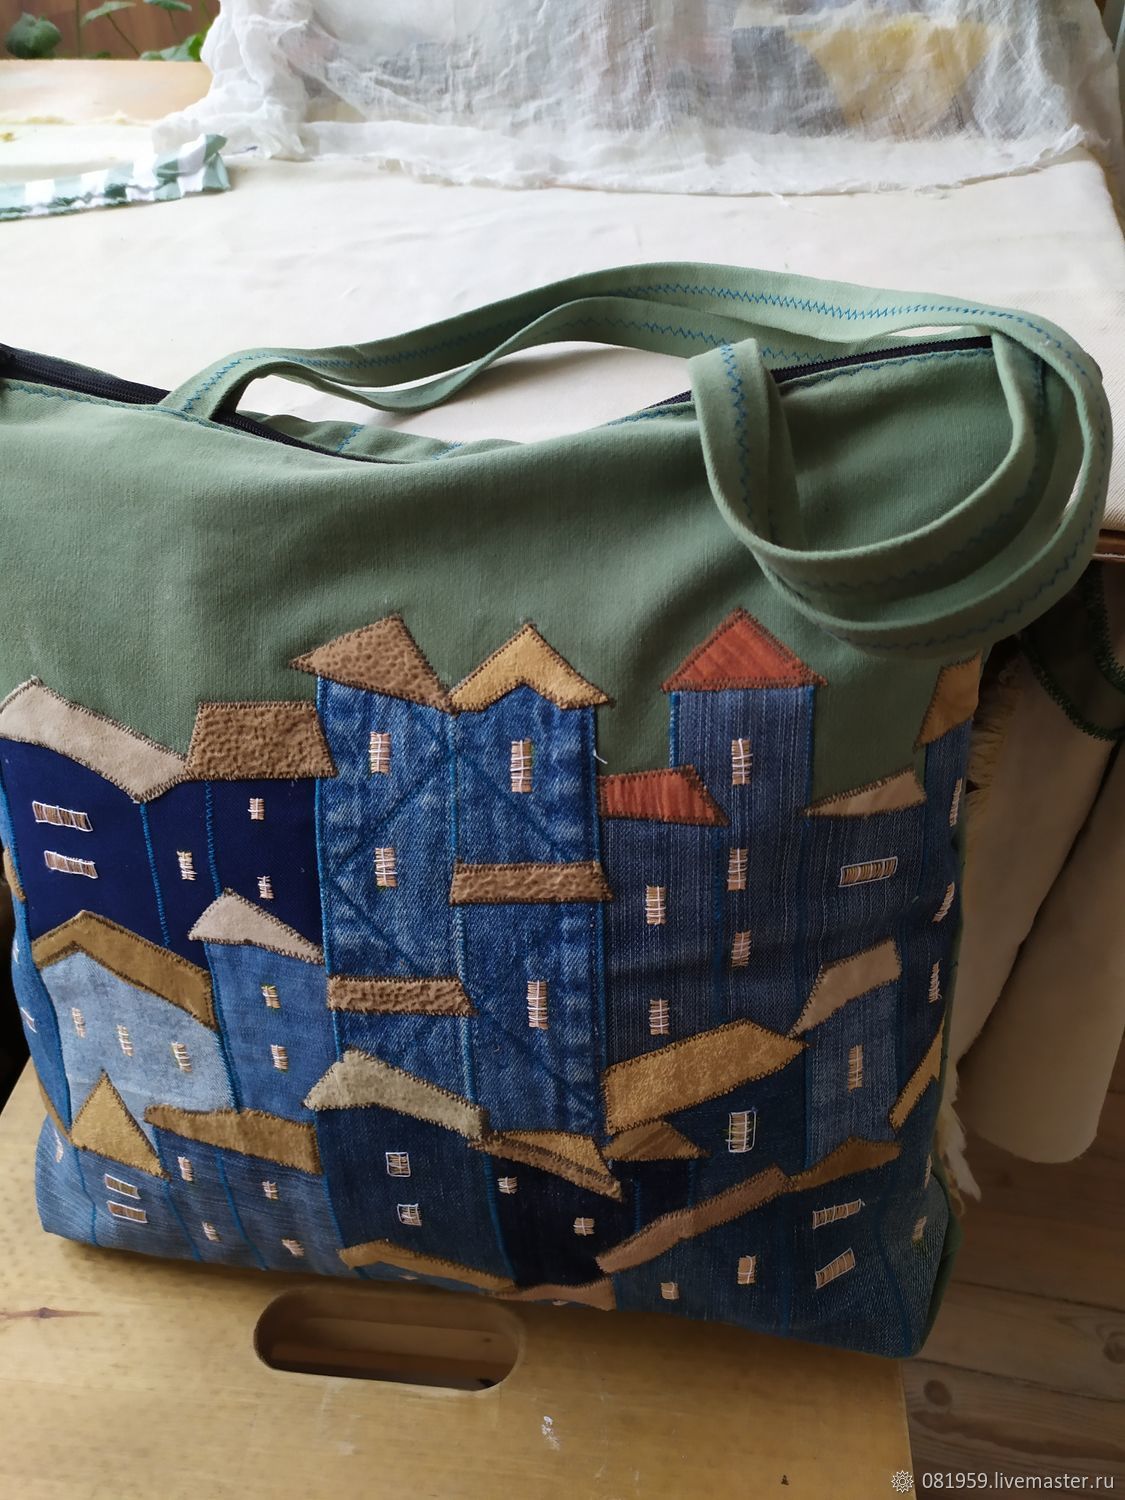 Shopper bag: with applique Houses, Shopper, St. Petersburg,  Фото №1